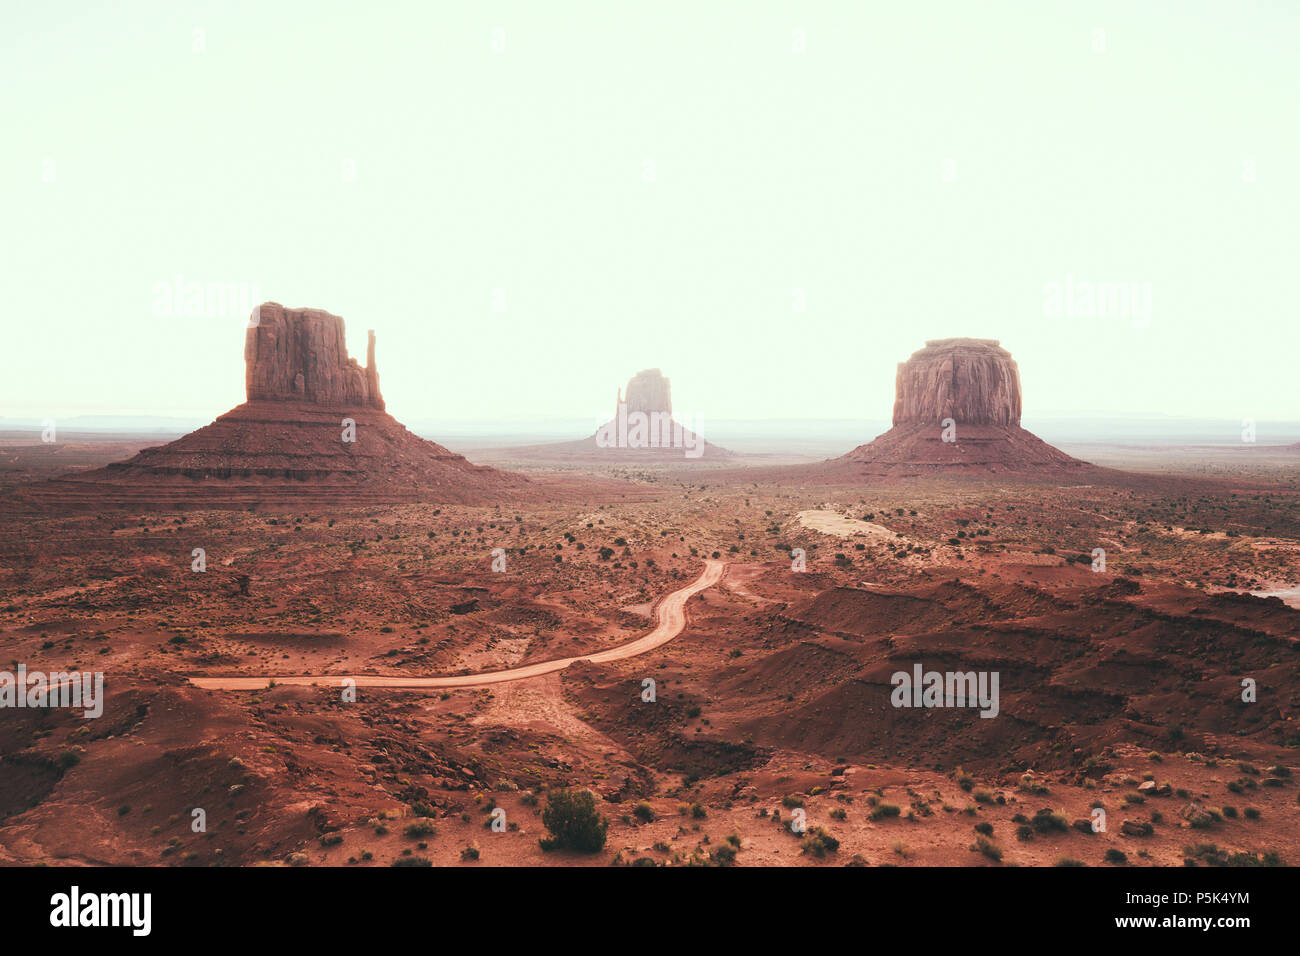 La vue classique du scenic Monument Valley avec la célèbre mitaines et Merrick Butte en été avec retro vintage style Instagram, Arizona, effet de filtre Banque D'Images